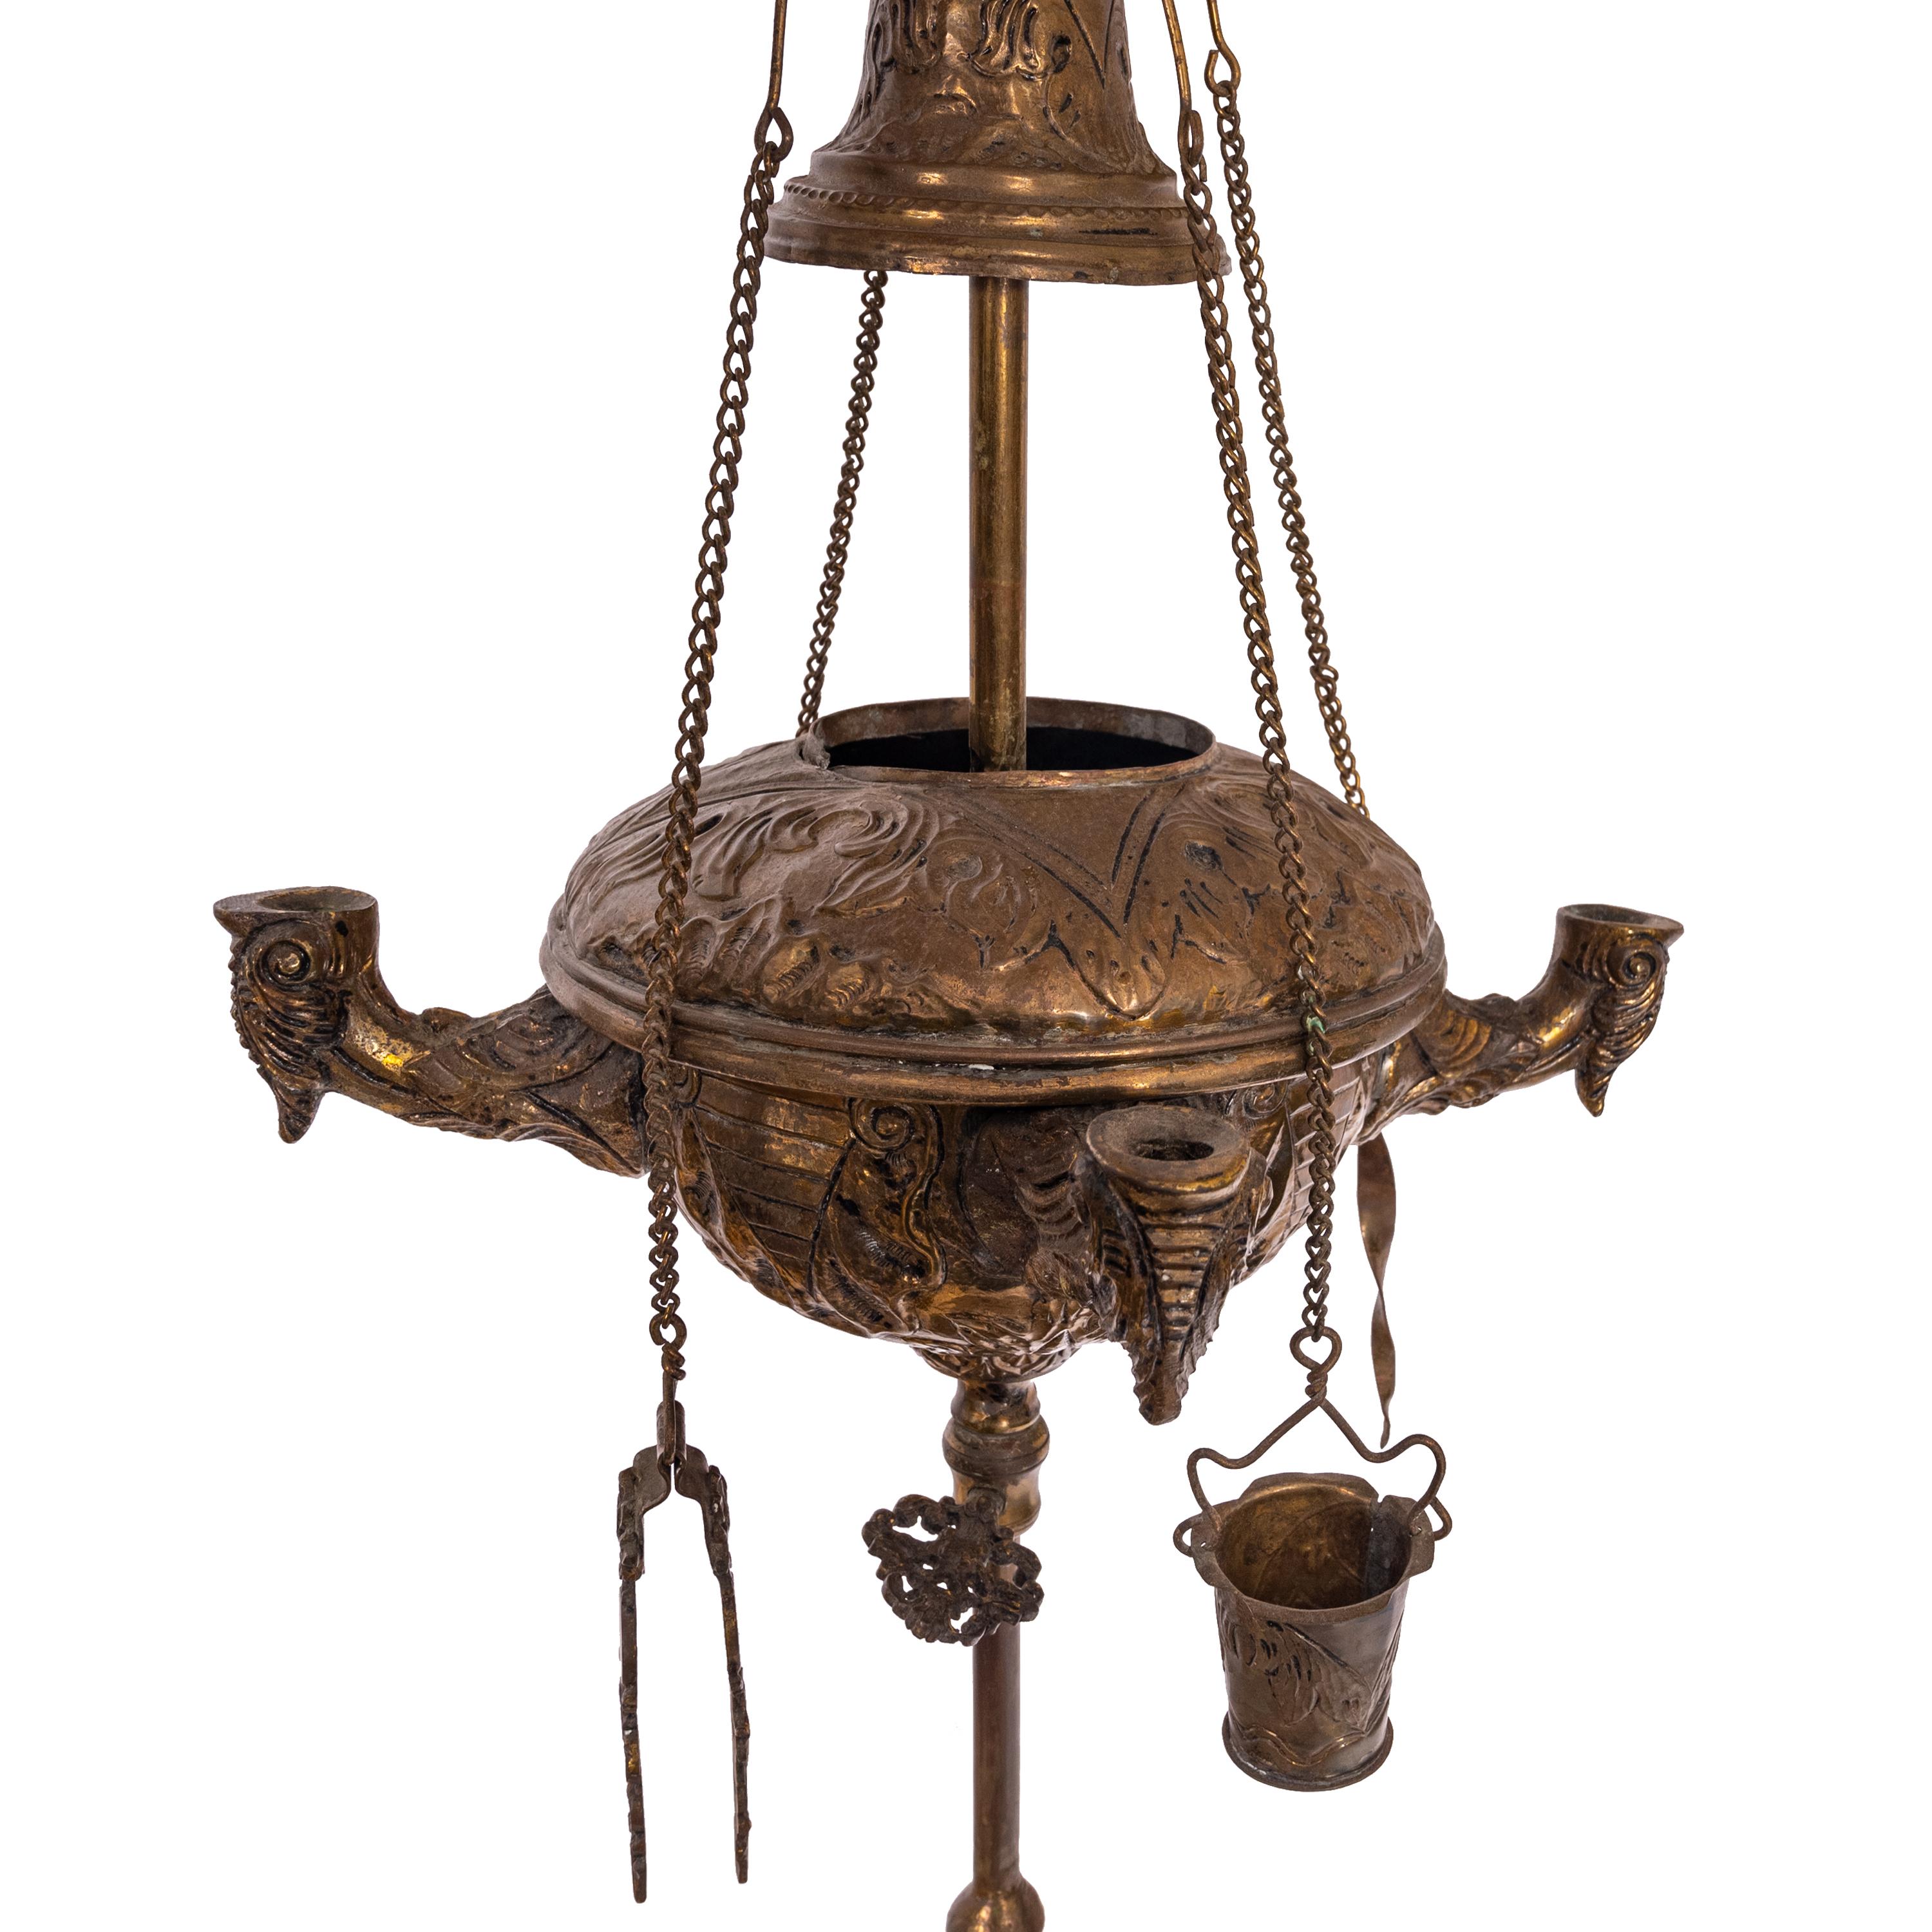 Renaissance Revival Antique Italian Renaissance Brass Lucerne Florentine Chatelaine Oil Lamp 1880 For Sale